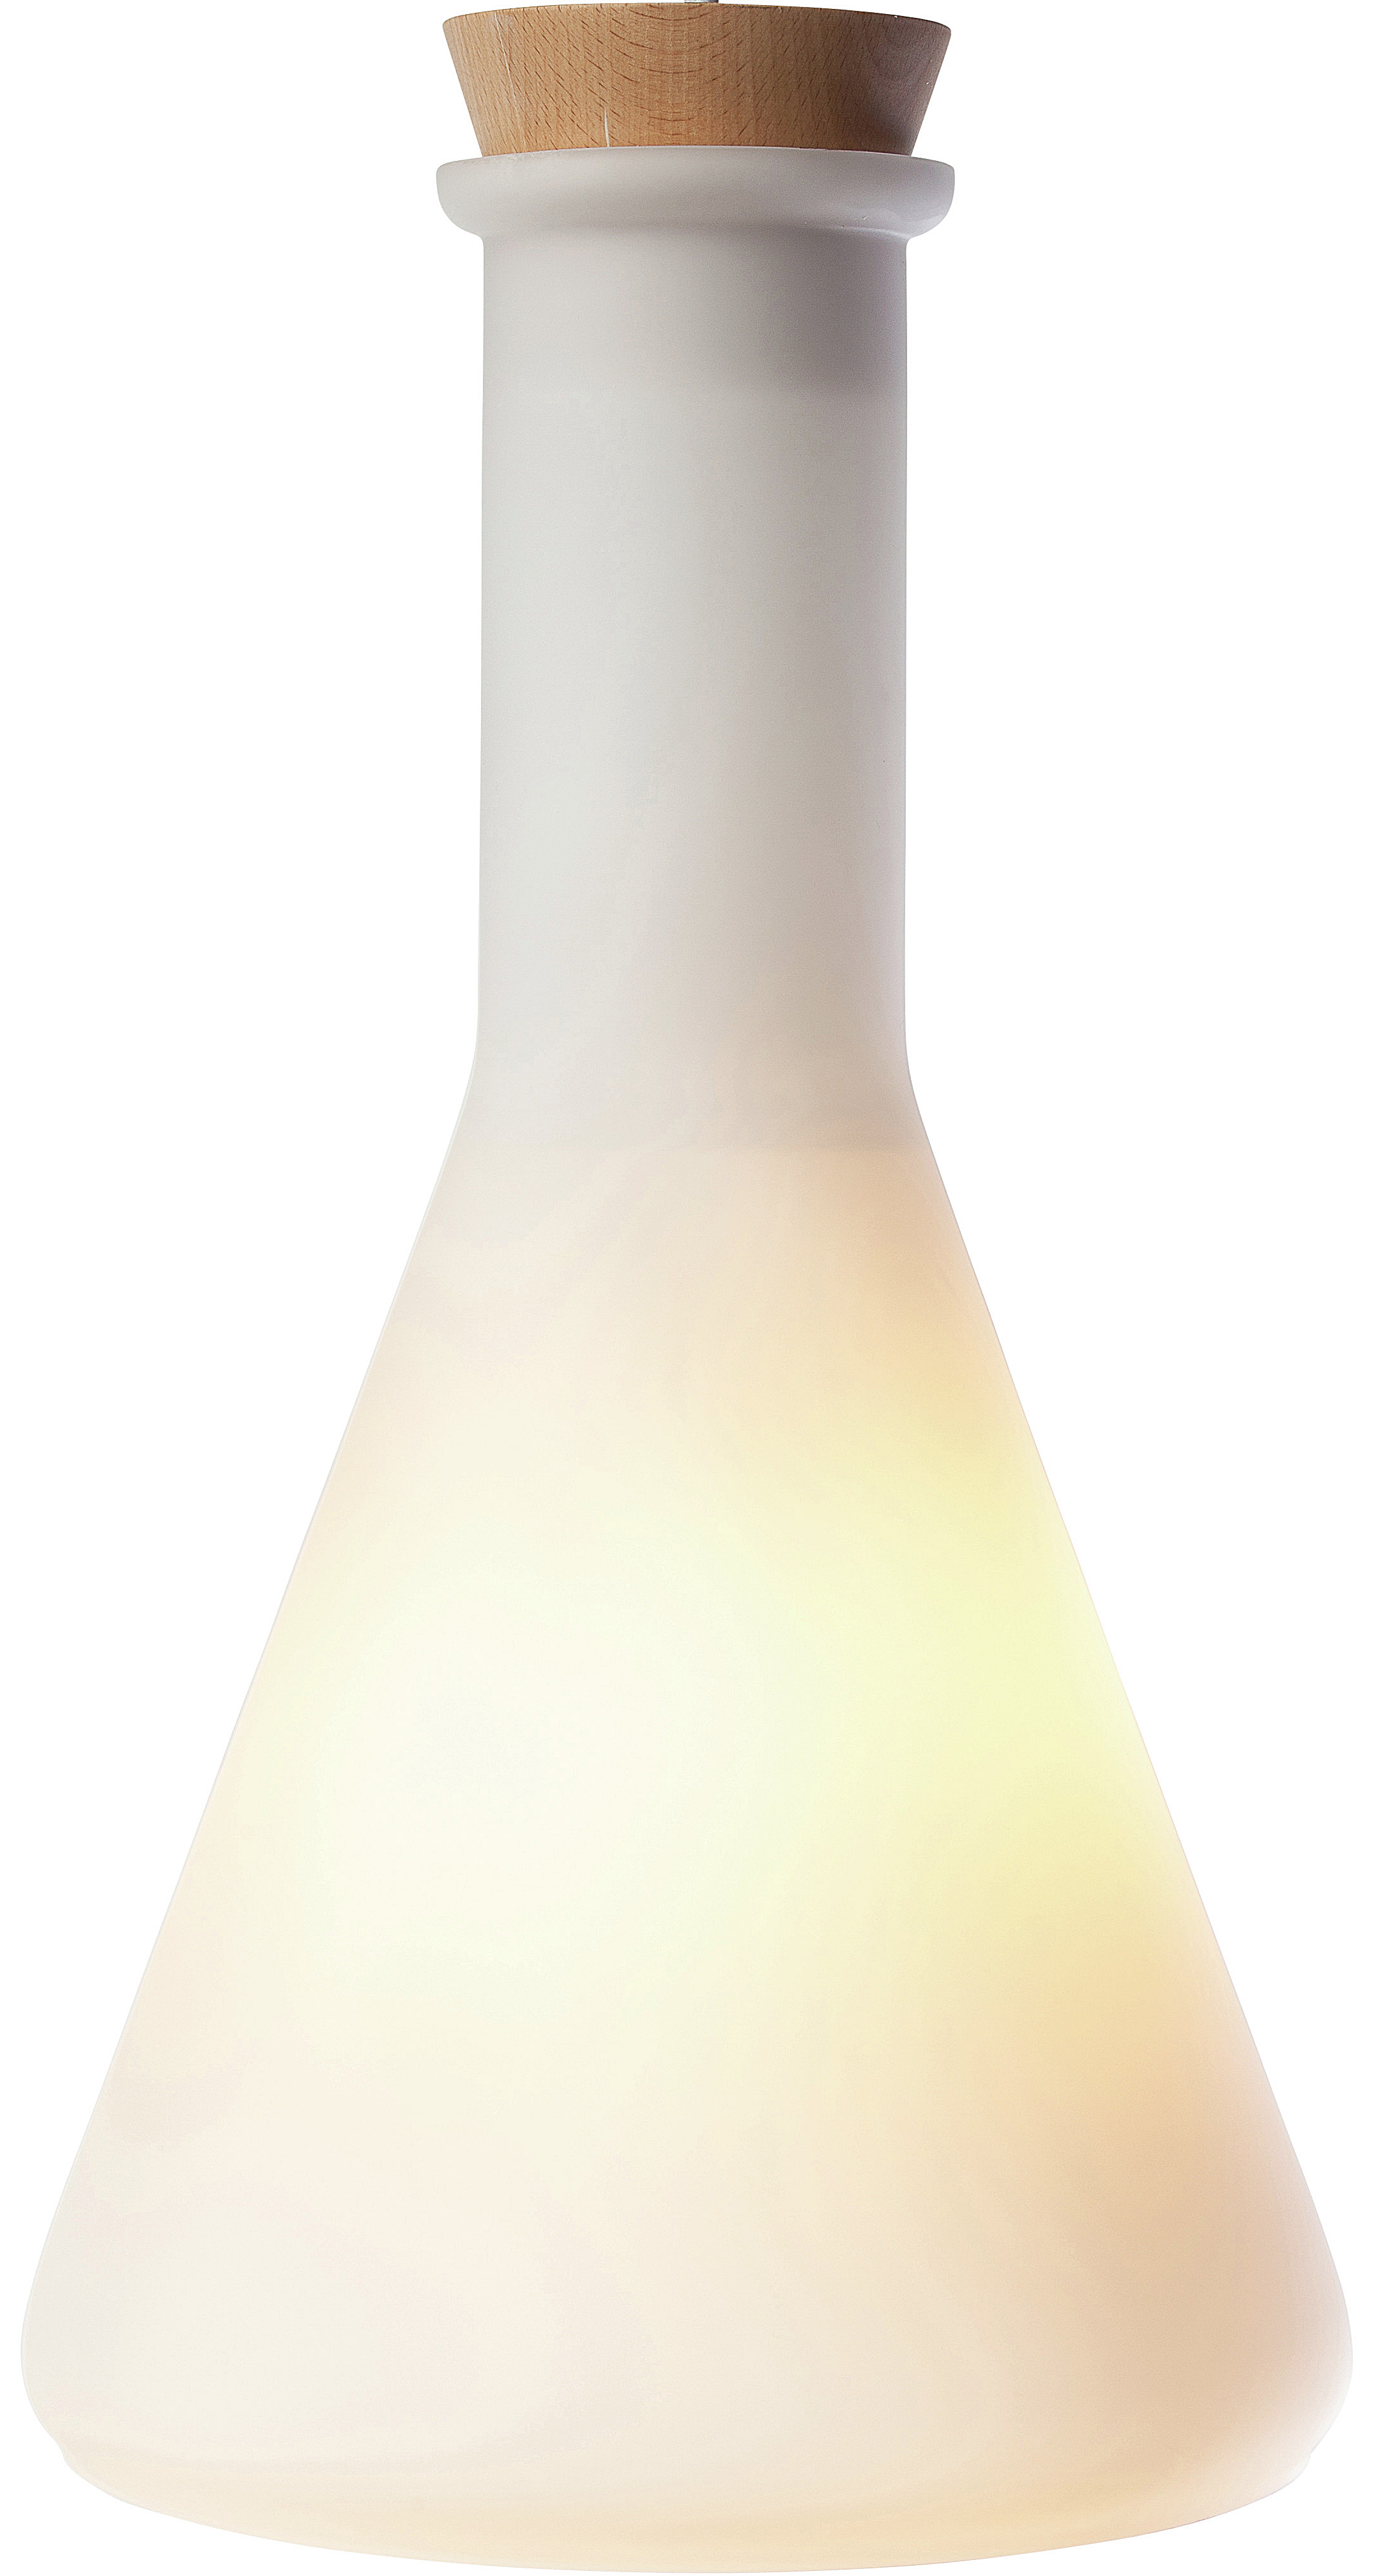 the nuevo rhea pendant lamp in white